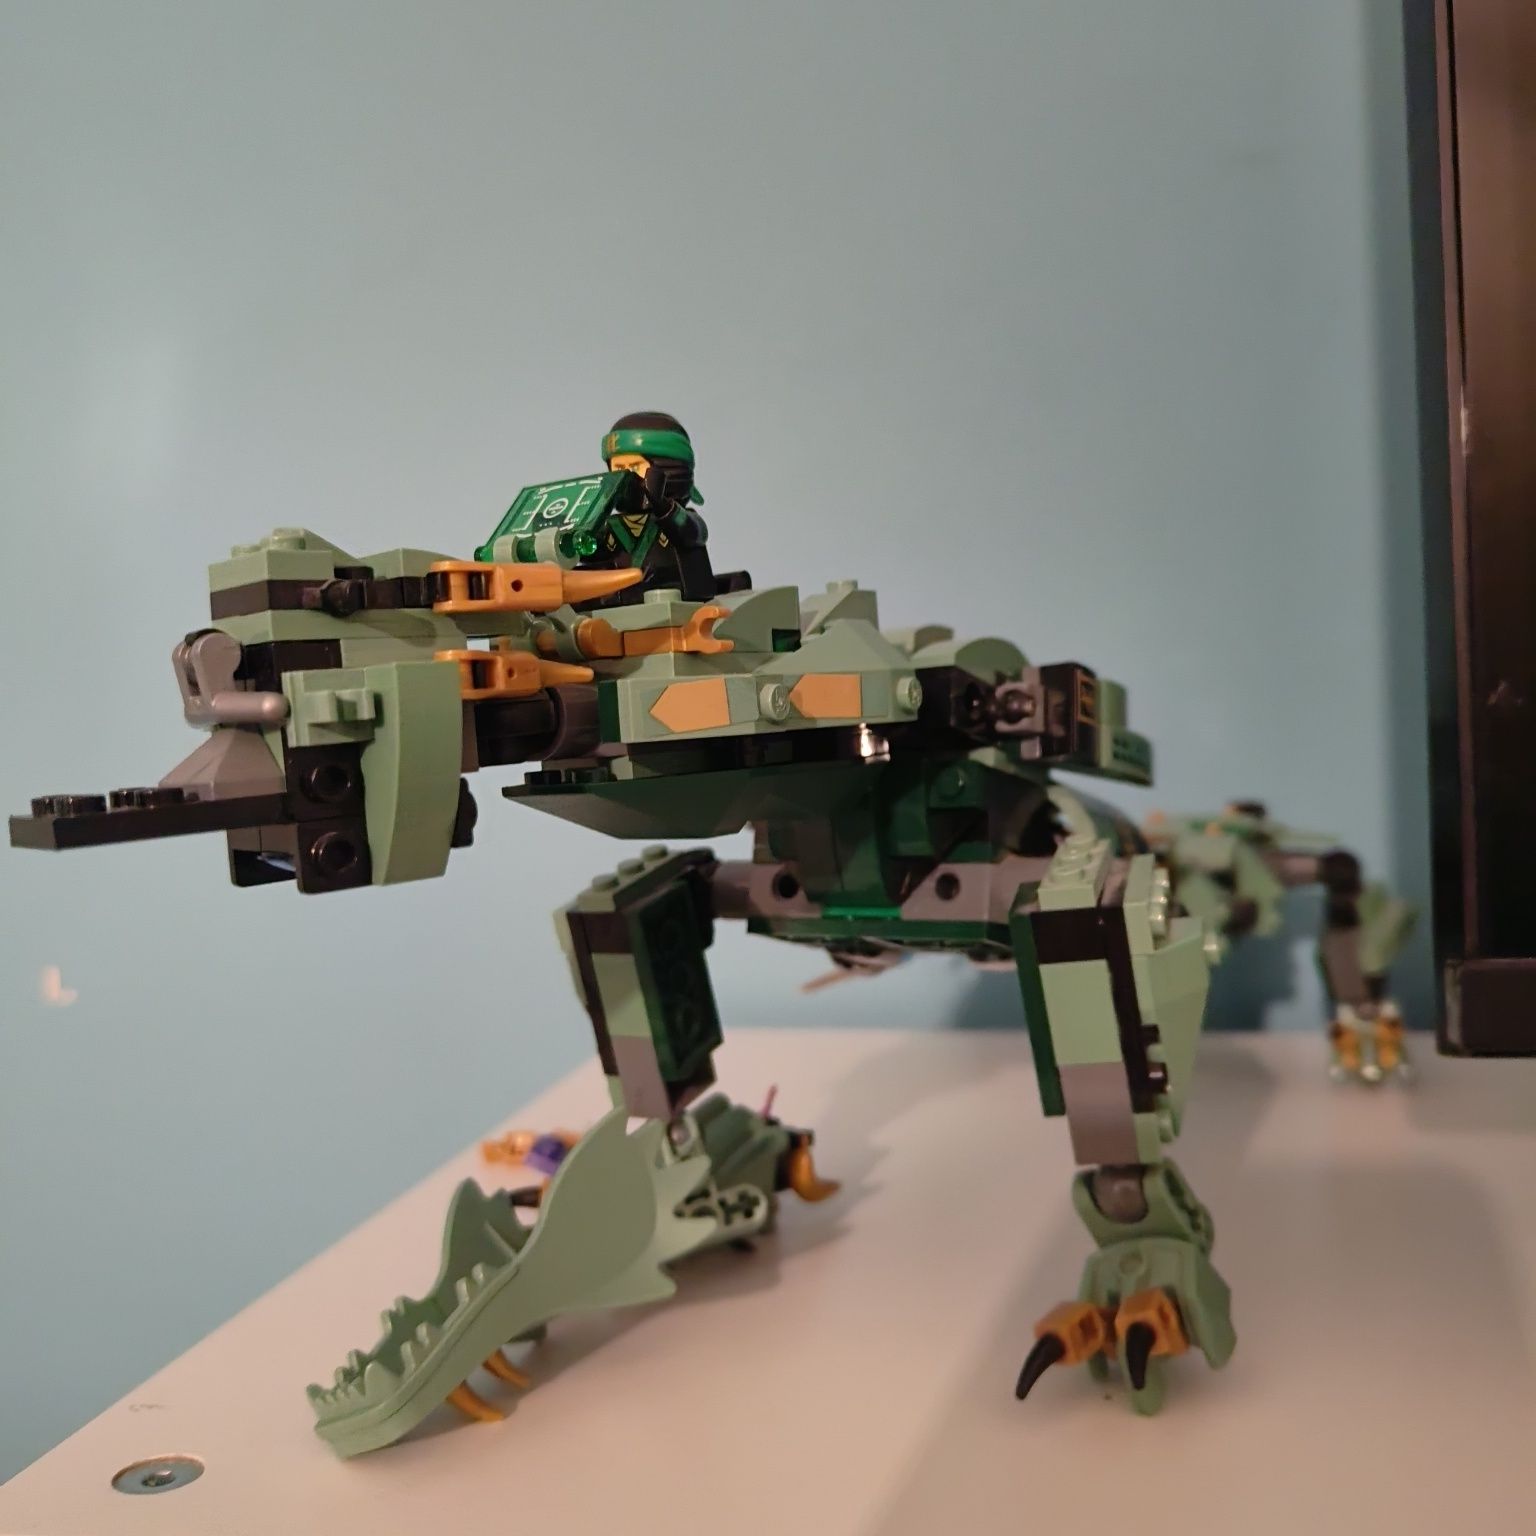 LEGO Ninjago Mechaniczny Smok Zielonego Ninja 70612